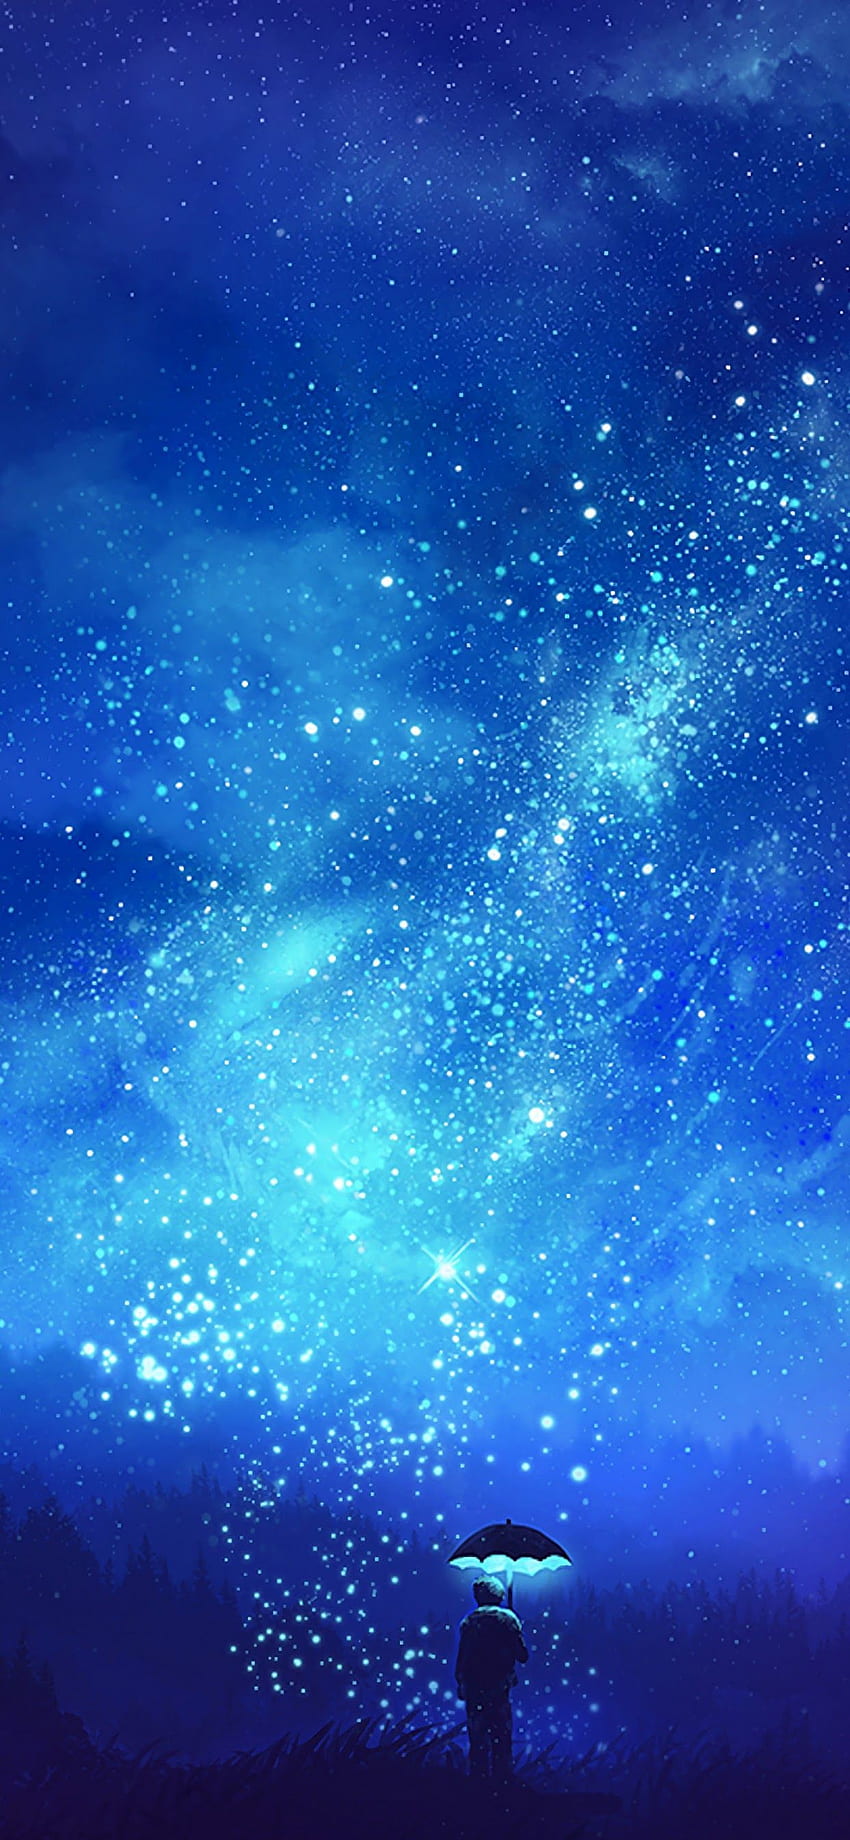 Lihat Latar Belakang Langit Malam Anime. Langit malam, latar belakang, Langit malam, Anime Starry Sky wallpaper ponsel HD